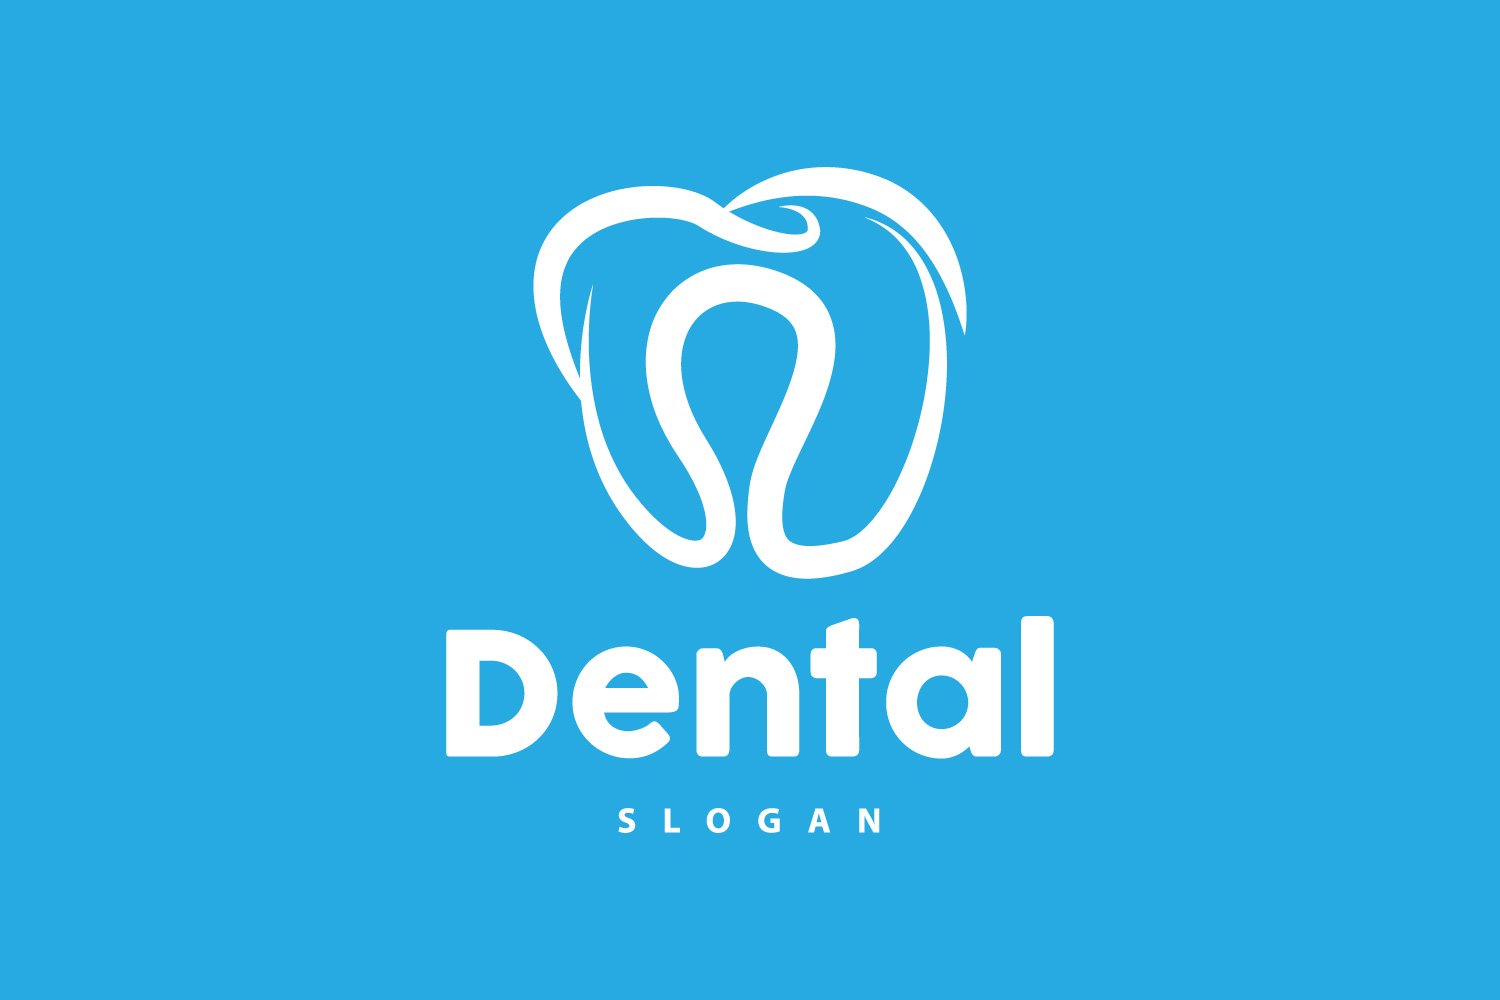 Tooth logo Dental Health Vector CareV19